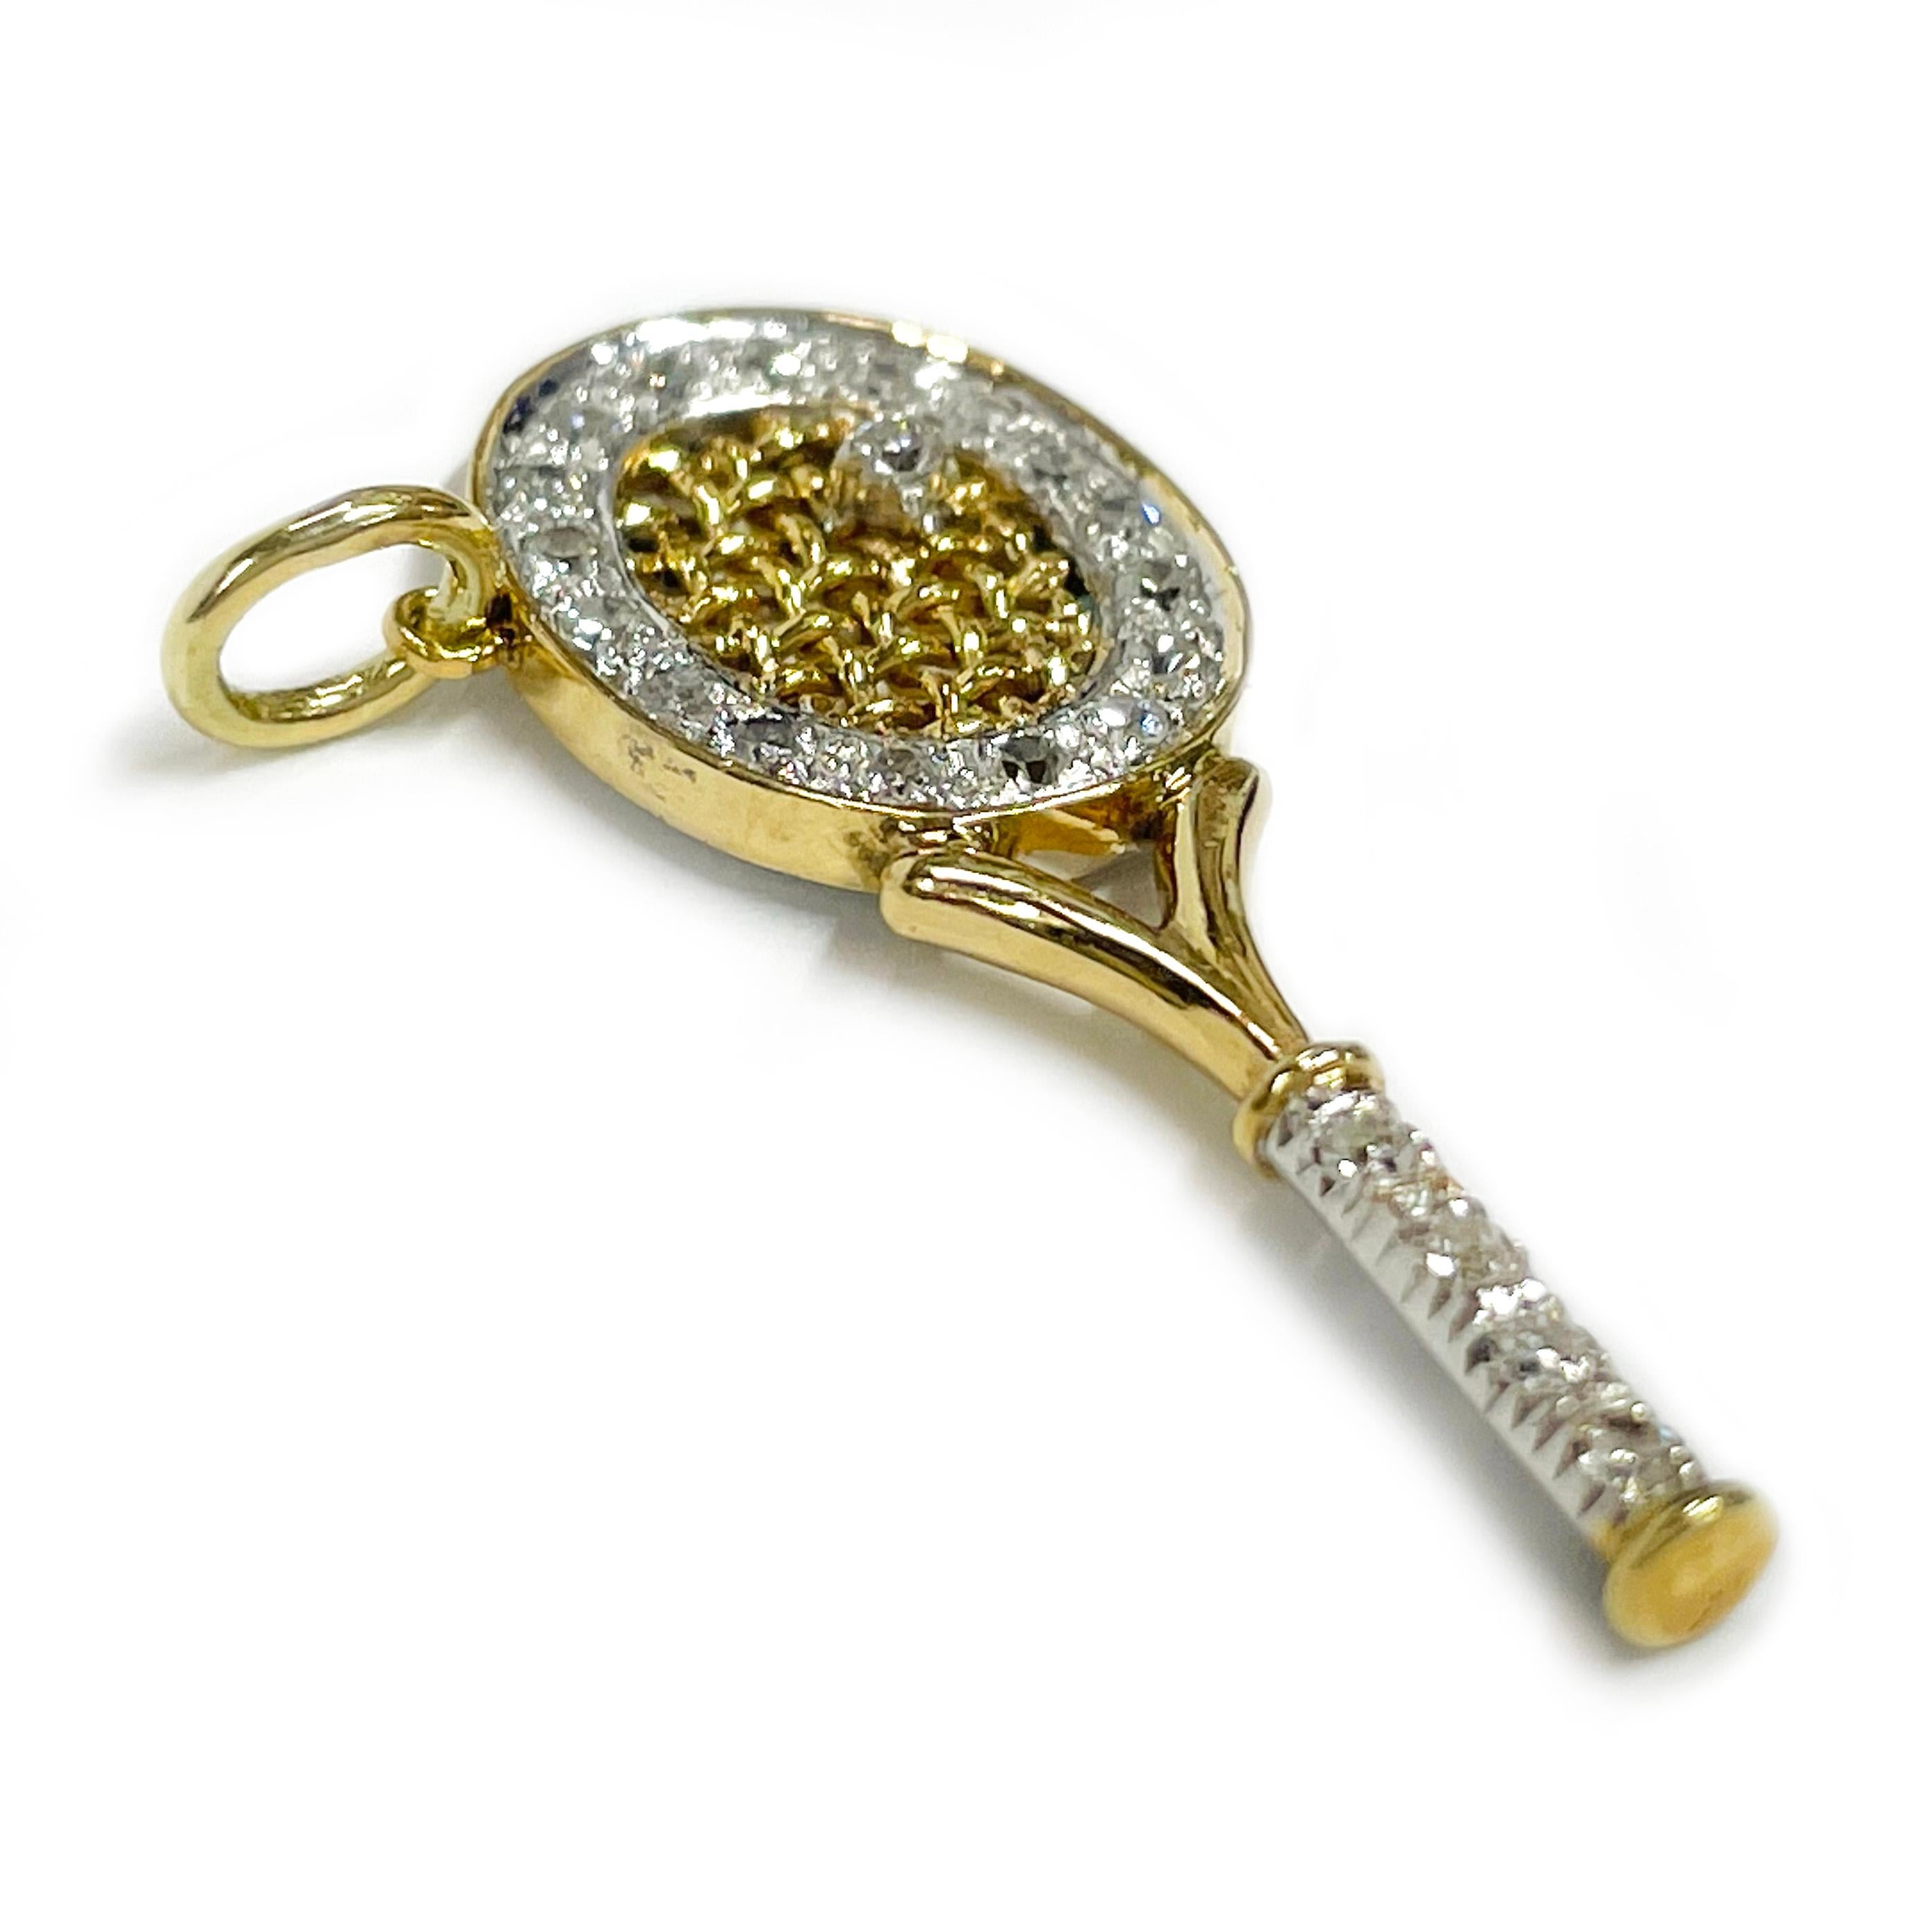 Pendentif raquette de tennis en or jaune et blanc avec diamants. Ce charmant pendentif offre un véritable éclat avec vingt-deux diamants ronds taille unique de 1,72 mm sertis en or blanc autour de la raquette et sur le manche, et un diamant serti en